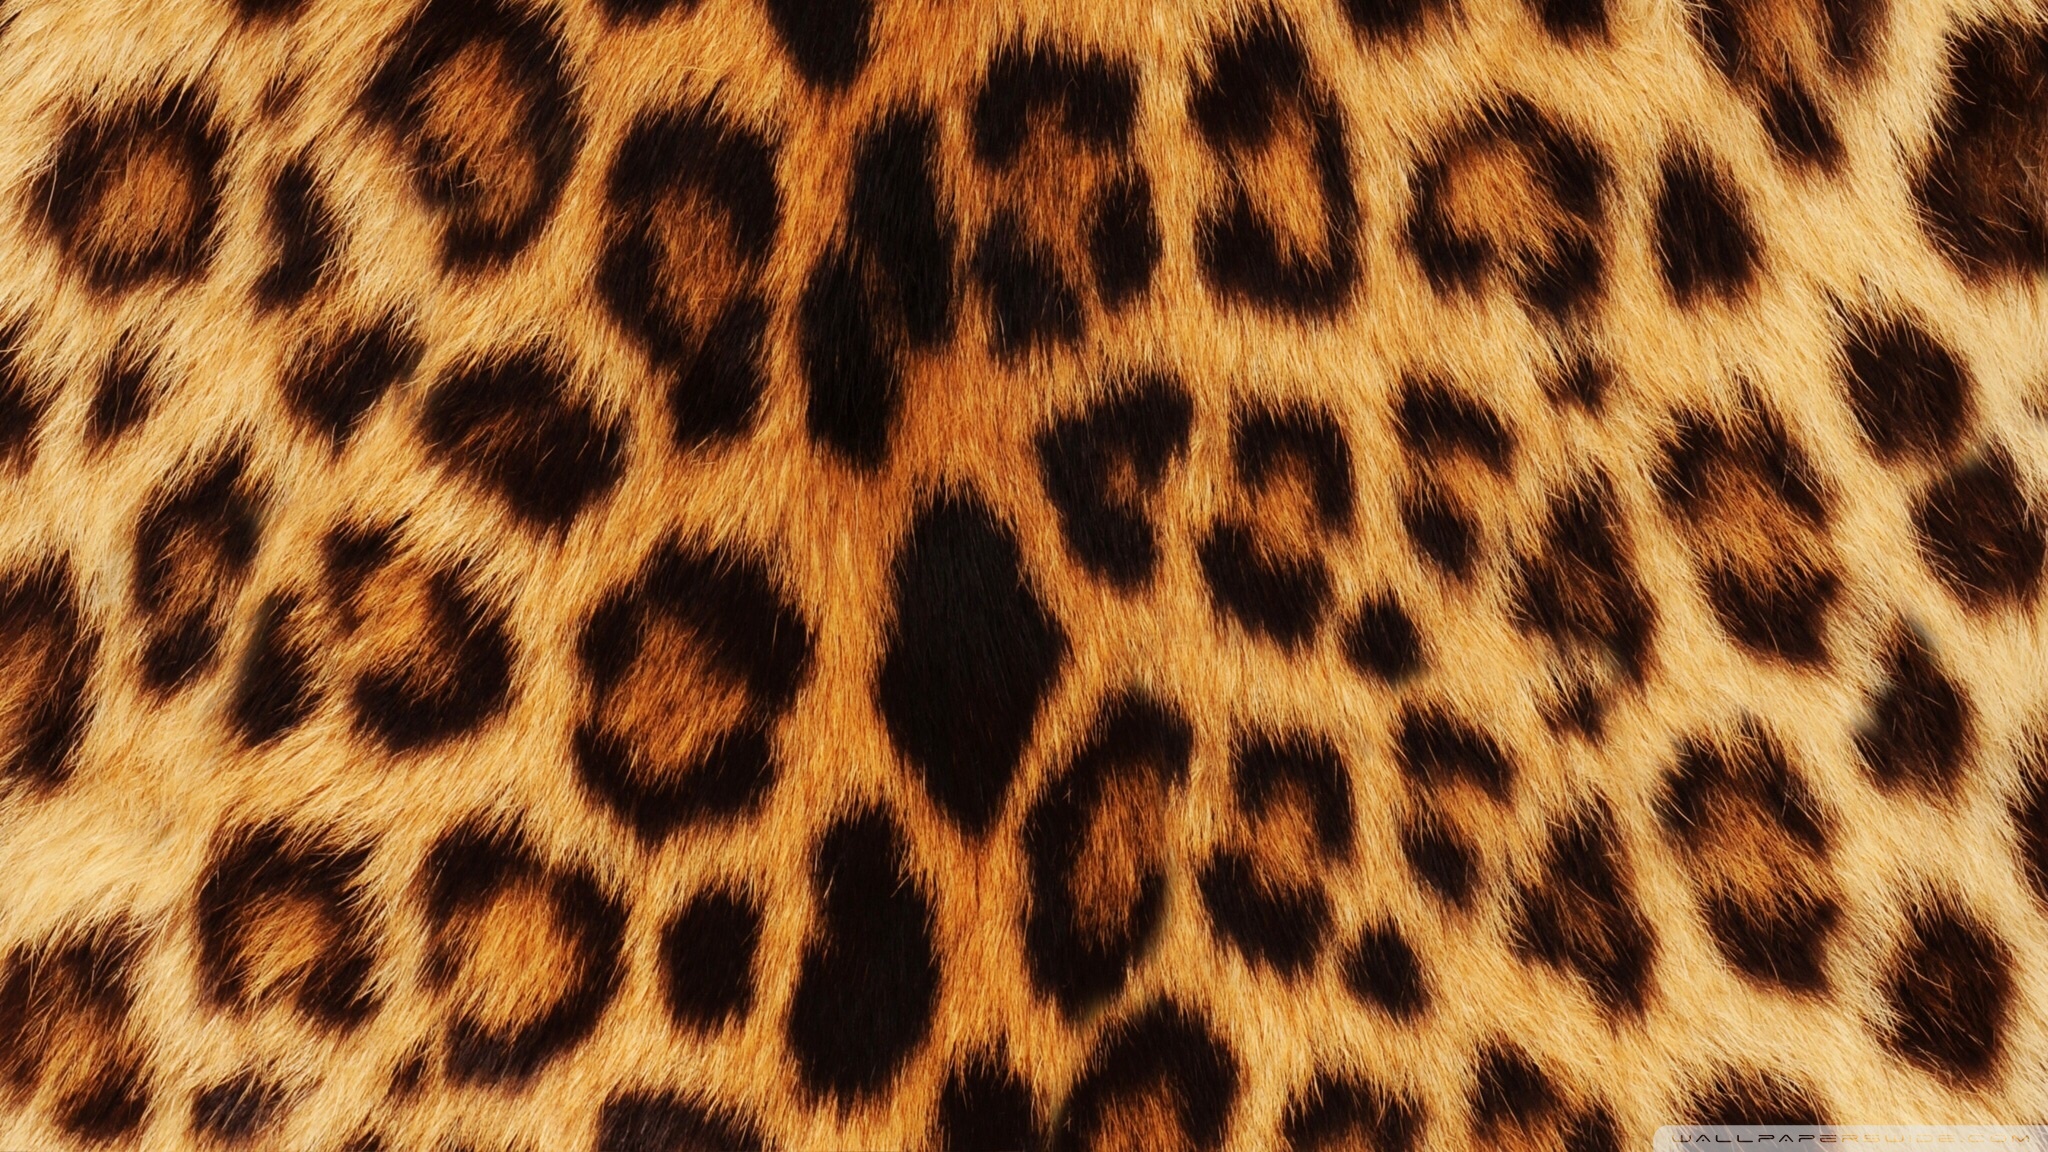 Леопард фон